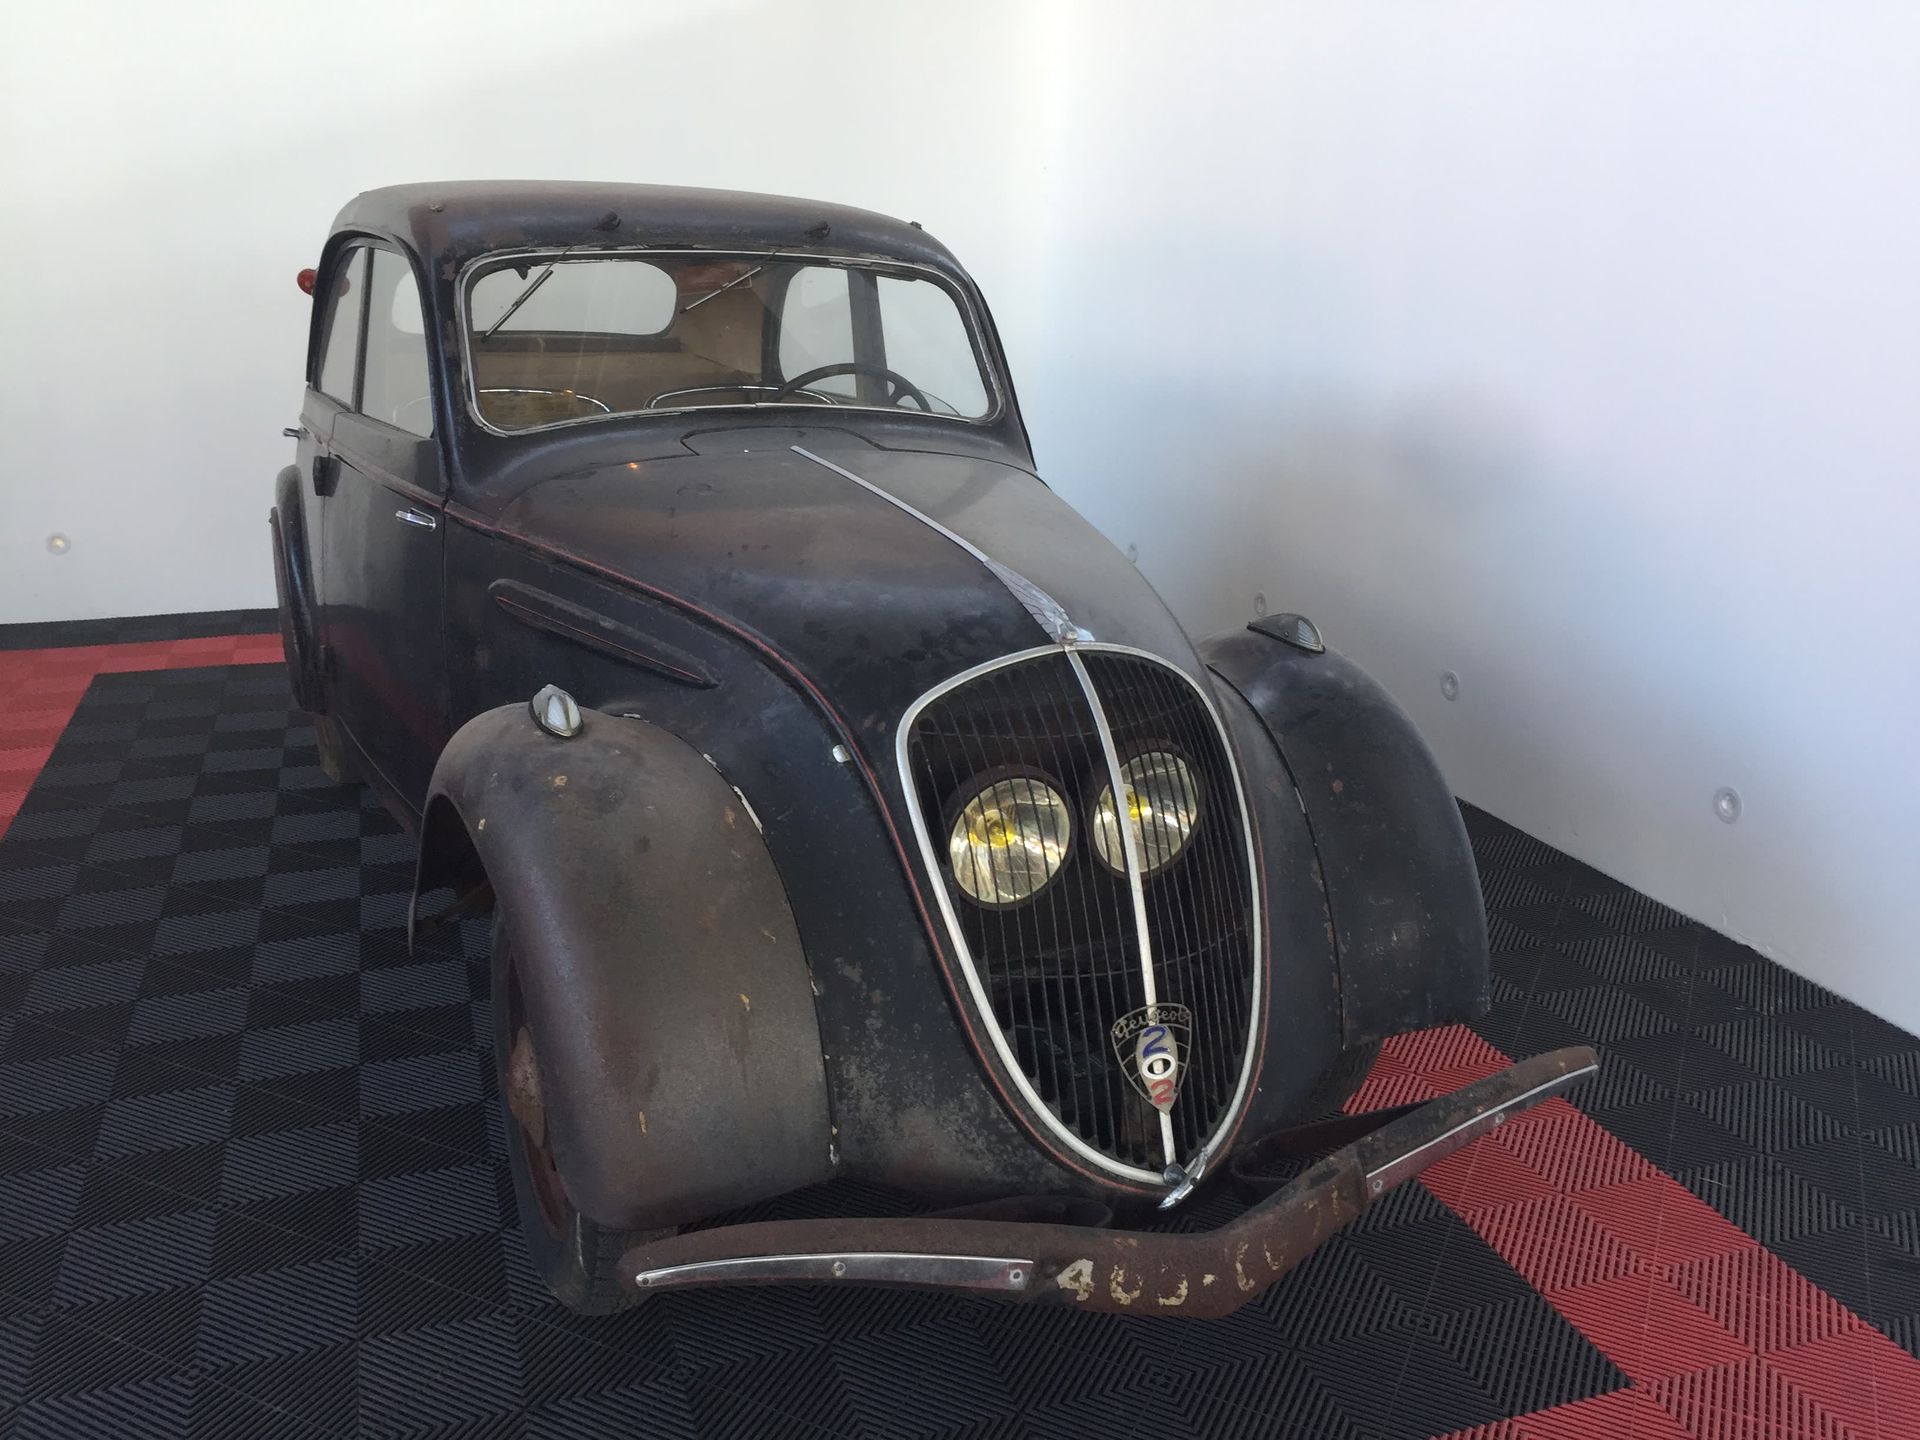 1938 Peugeot 202 53153 km

Registro en francés 

Número de serie: 438231

El coc&hellip;